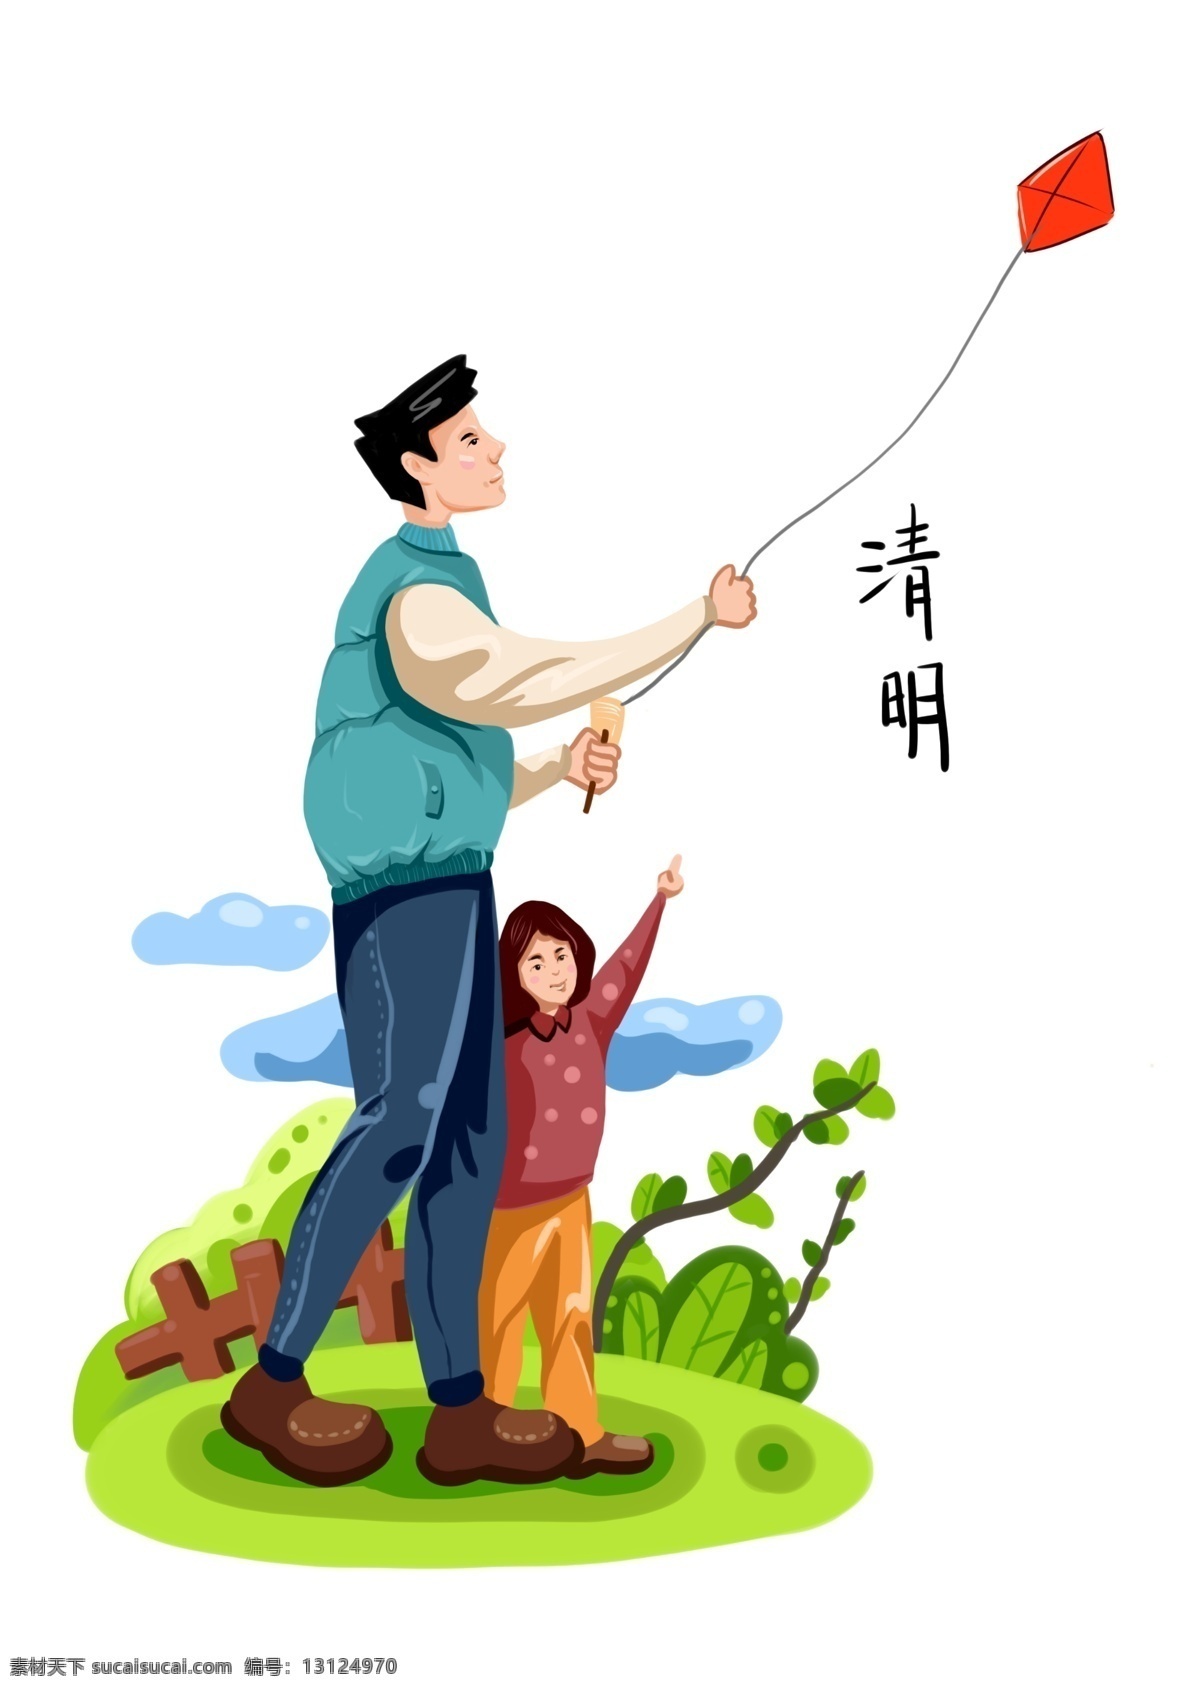 清明节 去 放风筝 父女 蓝衣服男人 传统中国节日 蓝色的云朵 去郊外放风筝 父女两